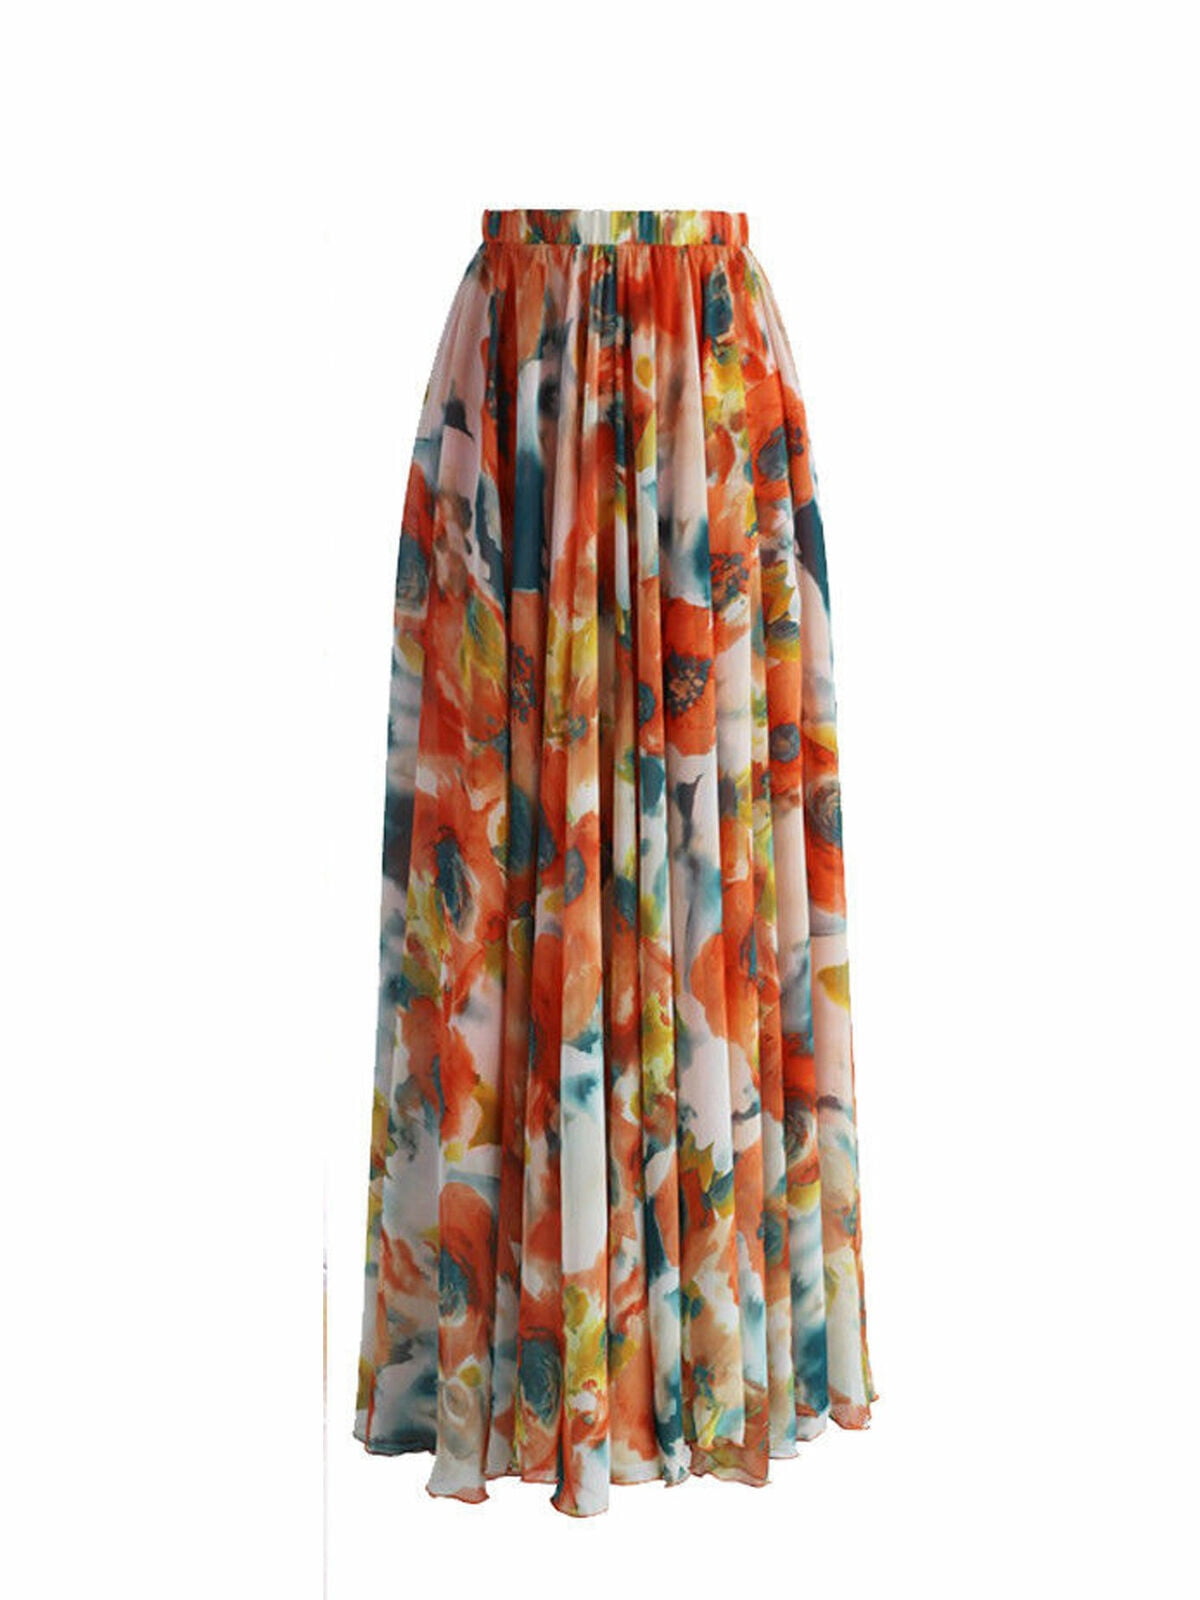 High waist boho print HIRIGIN Long Skirt Women maxi skirt floral print ...